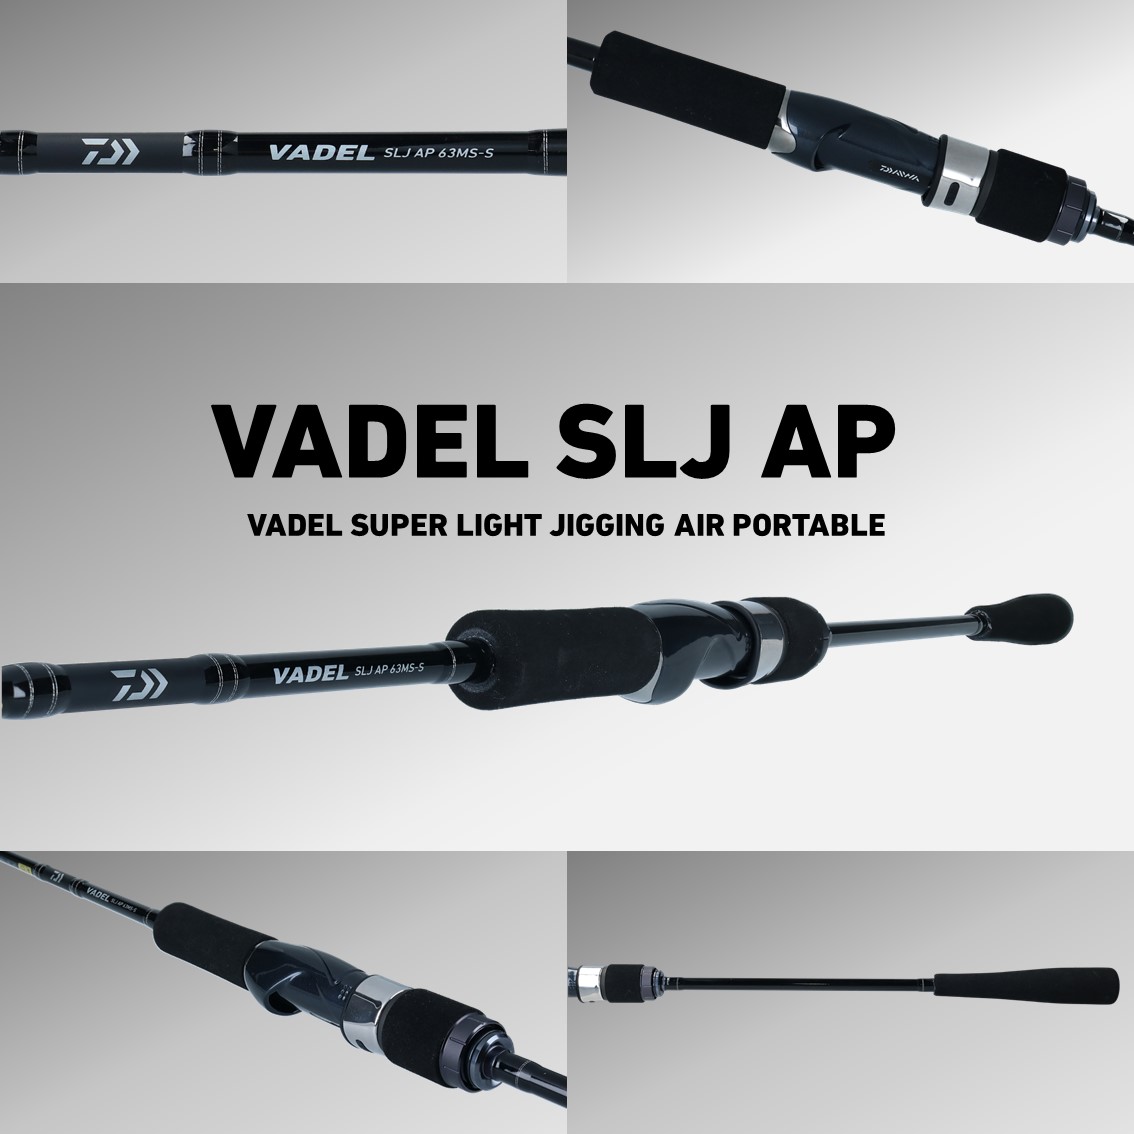 ダイワ ヴァデル SLJ エアポータブル 63MB-S (ライトジギングロッド) - 釣り具の販売、通販なら、フィッシング遊-WEB本店